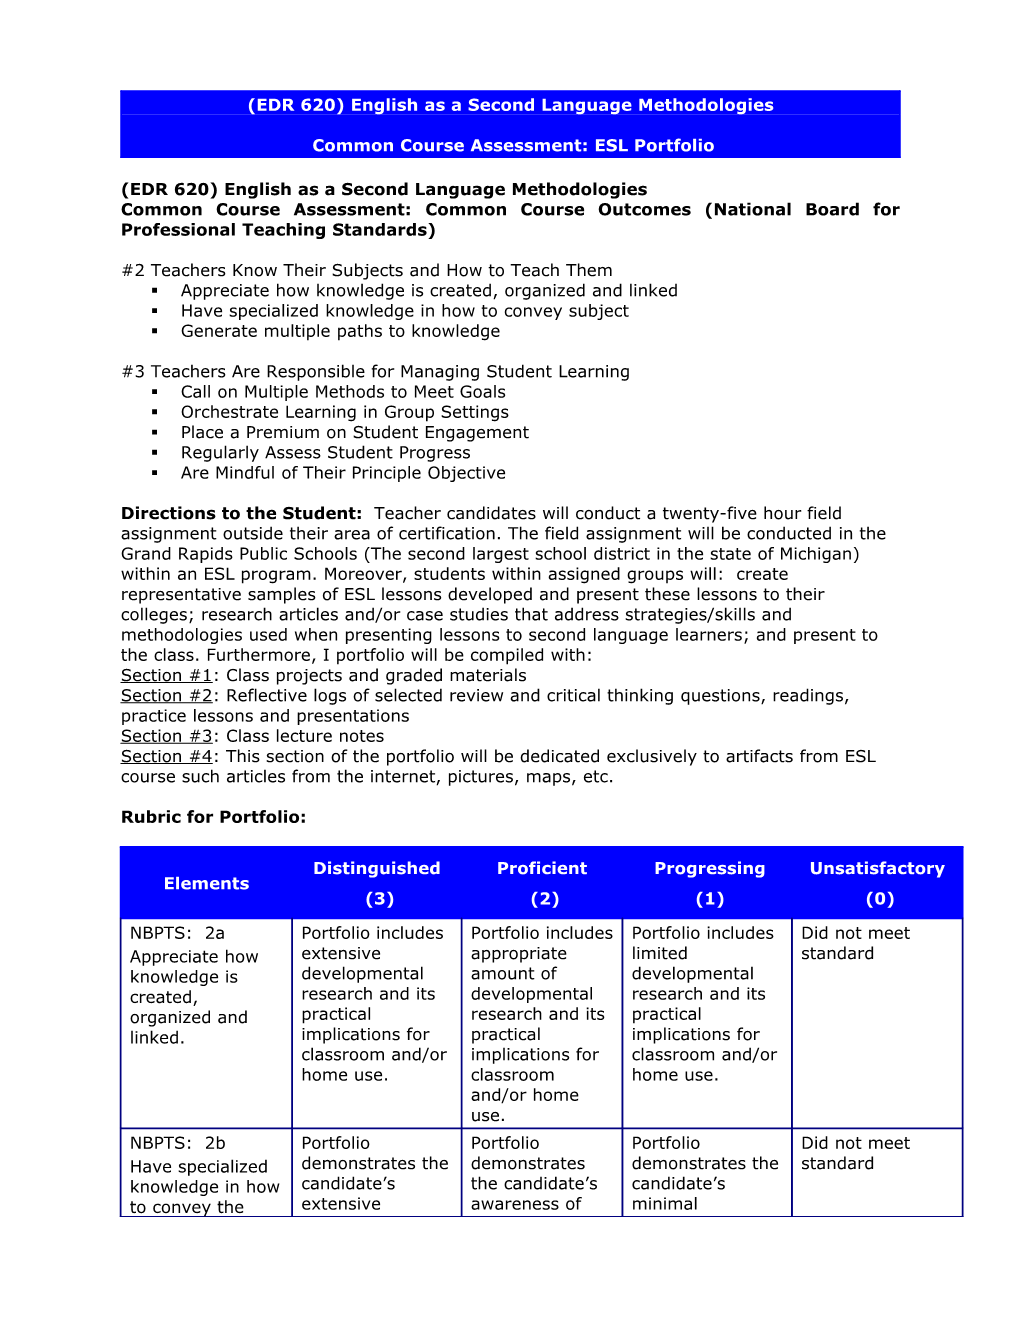 (ED 631) Common Course Assessment: ESL Portfolio